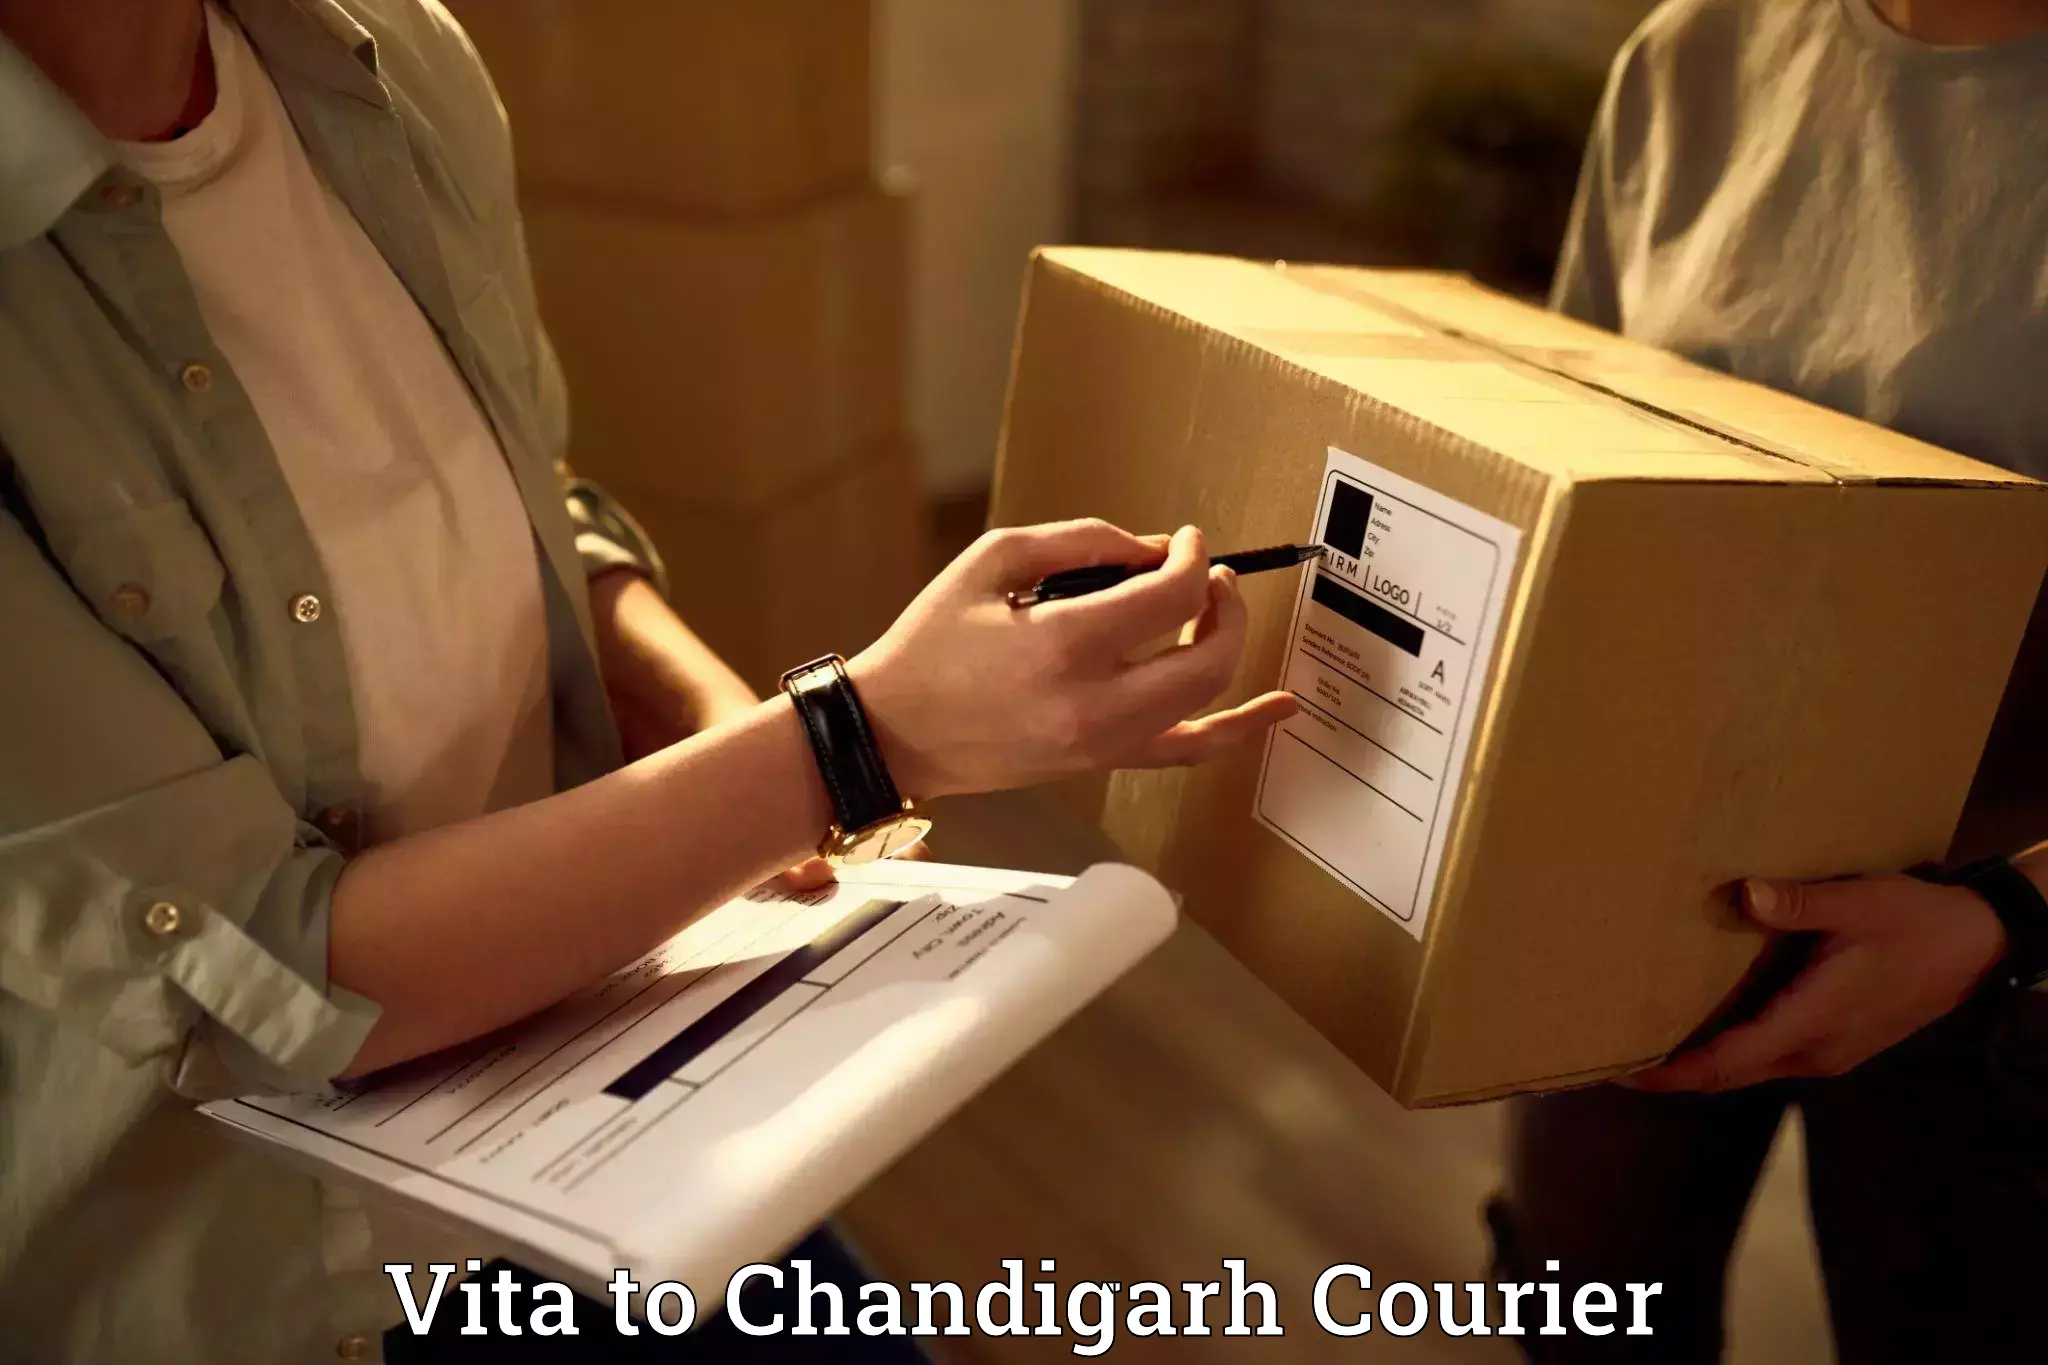 Home shifting experts Vita to Chandigarh